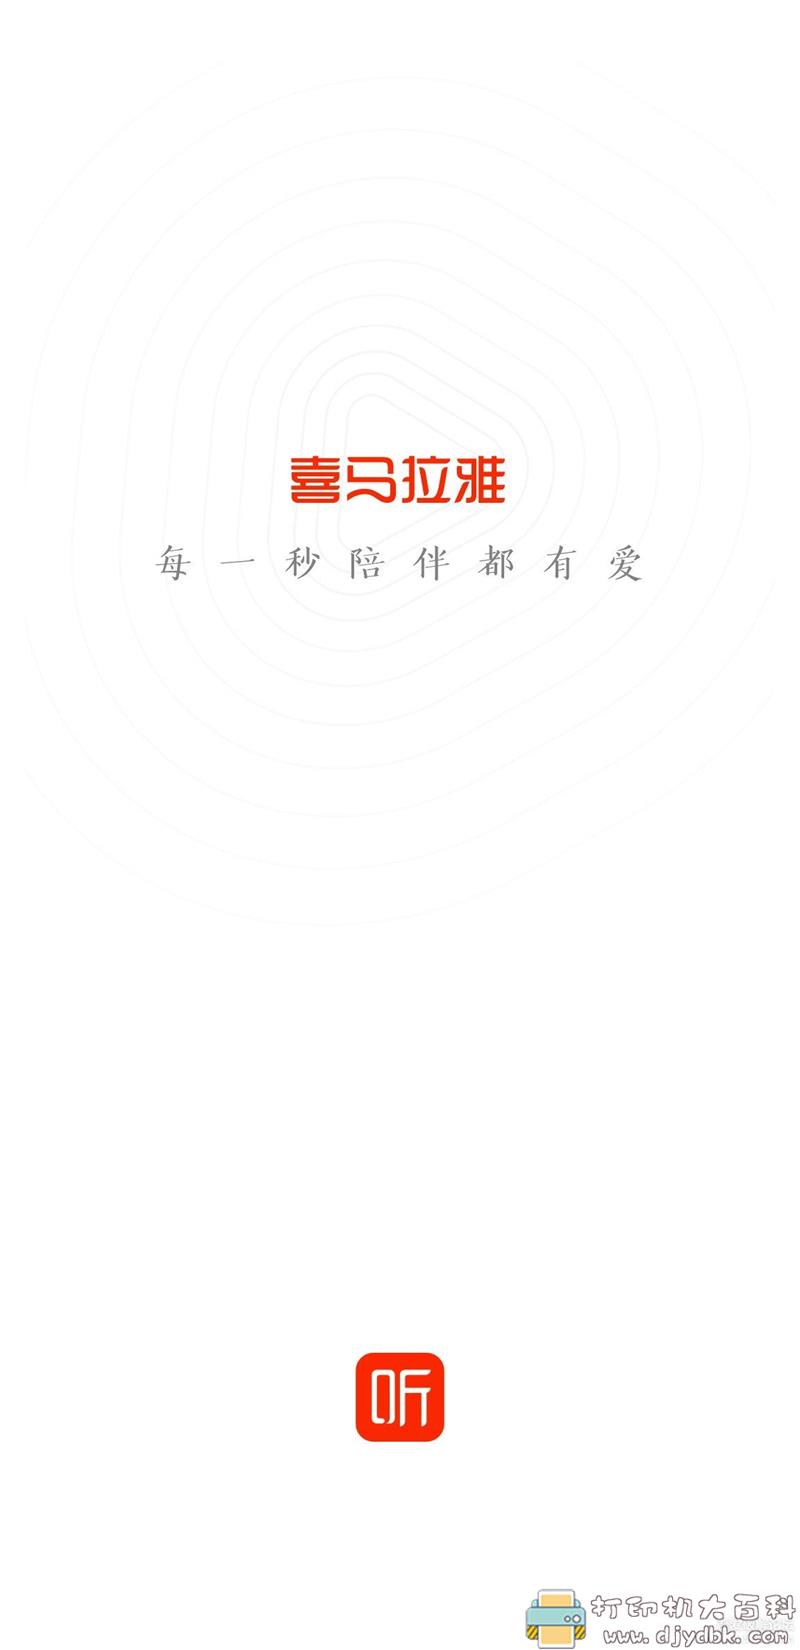 [Android]喜马拉雅华为Mate 40定制版-V6.6.48.3，特色是无广告 配图 No.1